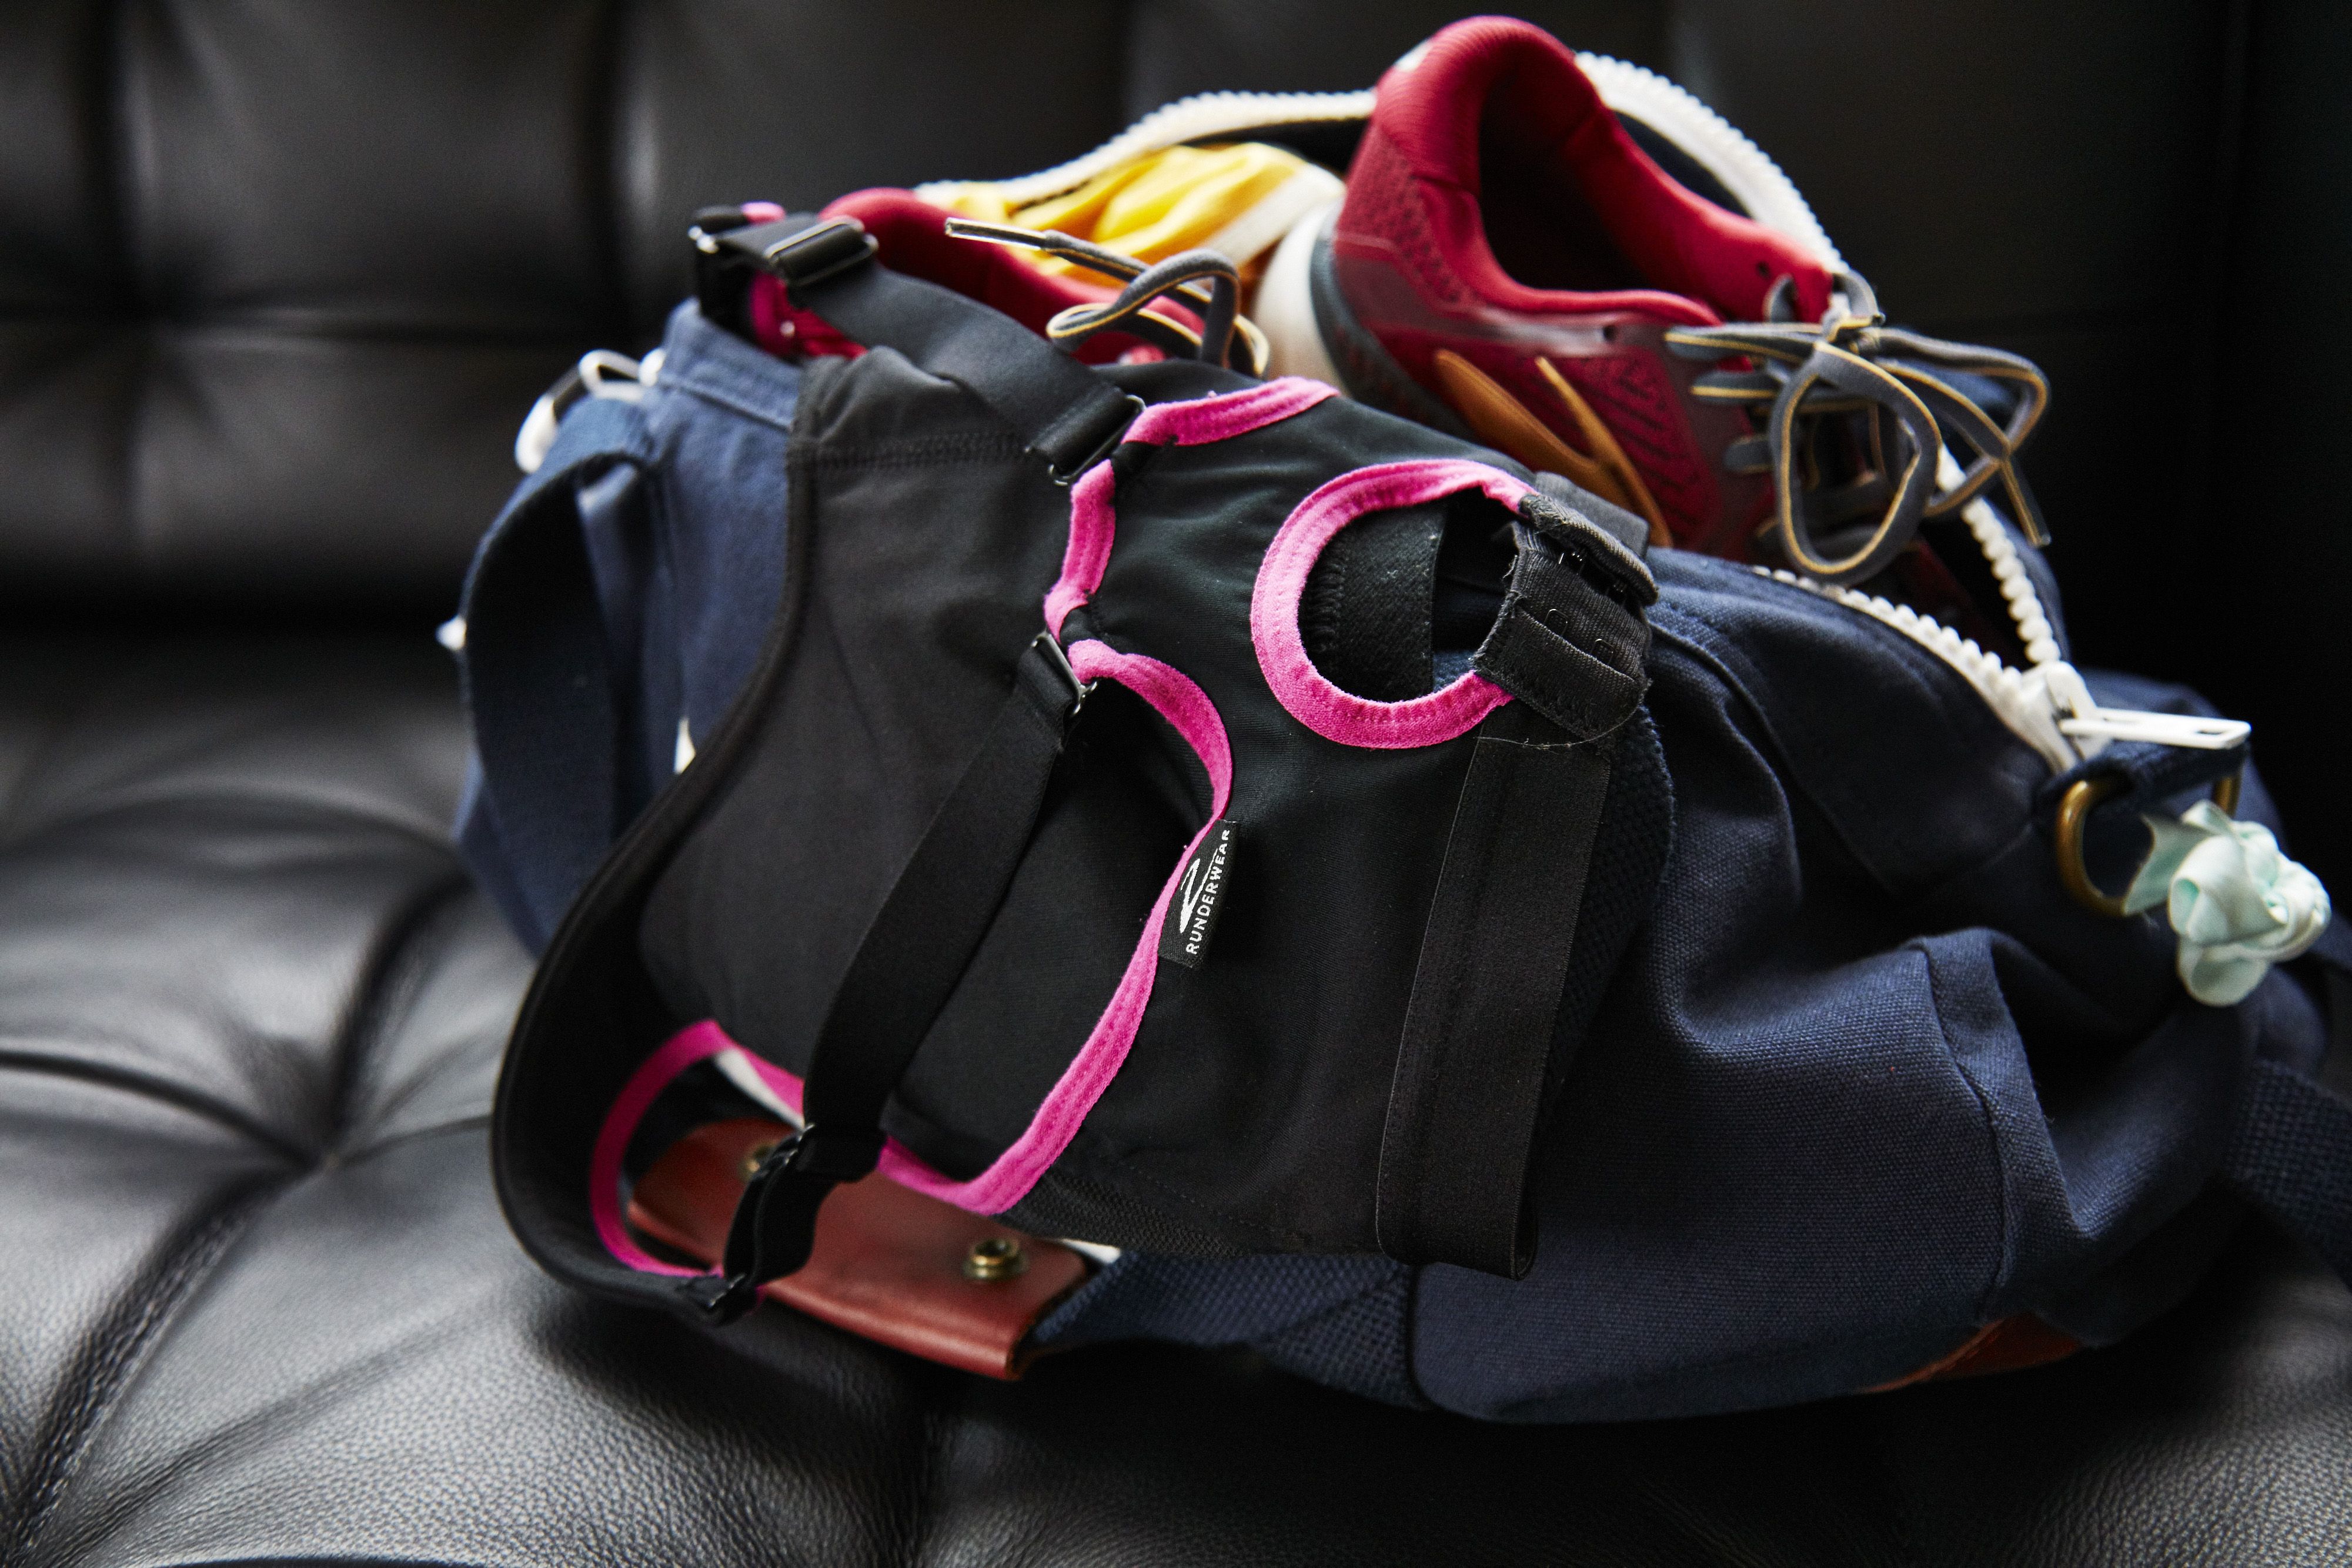 Duffel gym bag overnight travel bag,sport bag side mesh pocket adjustable strap 